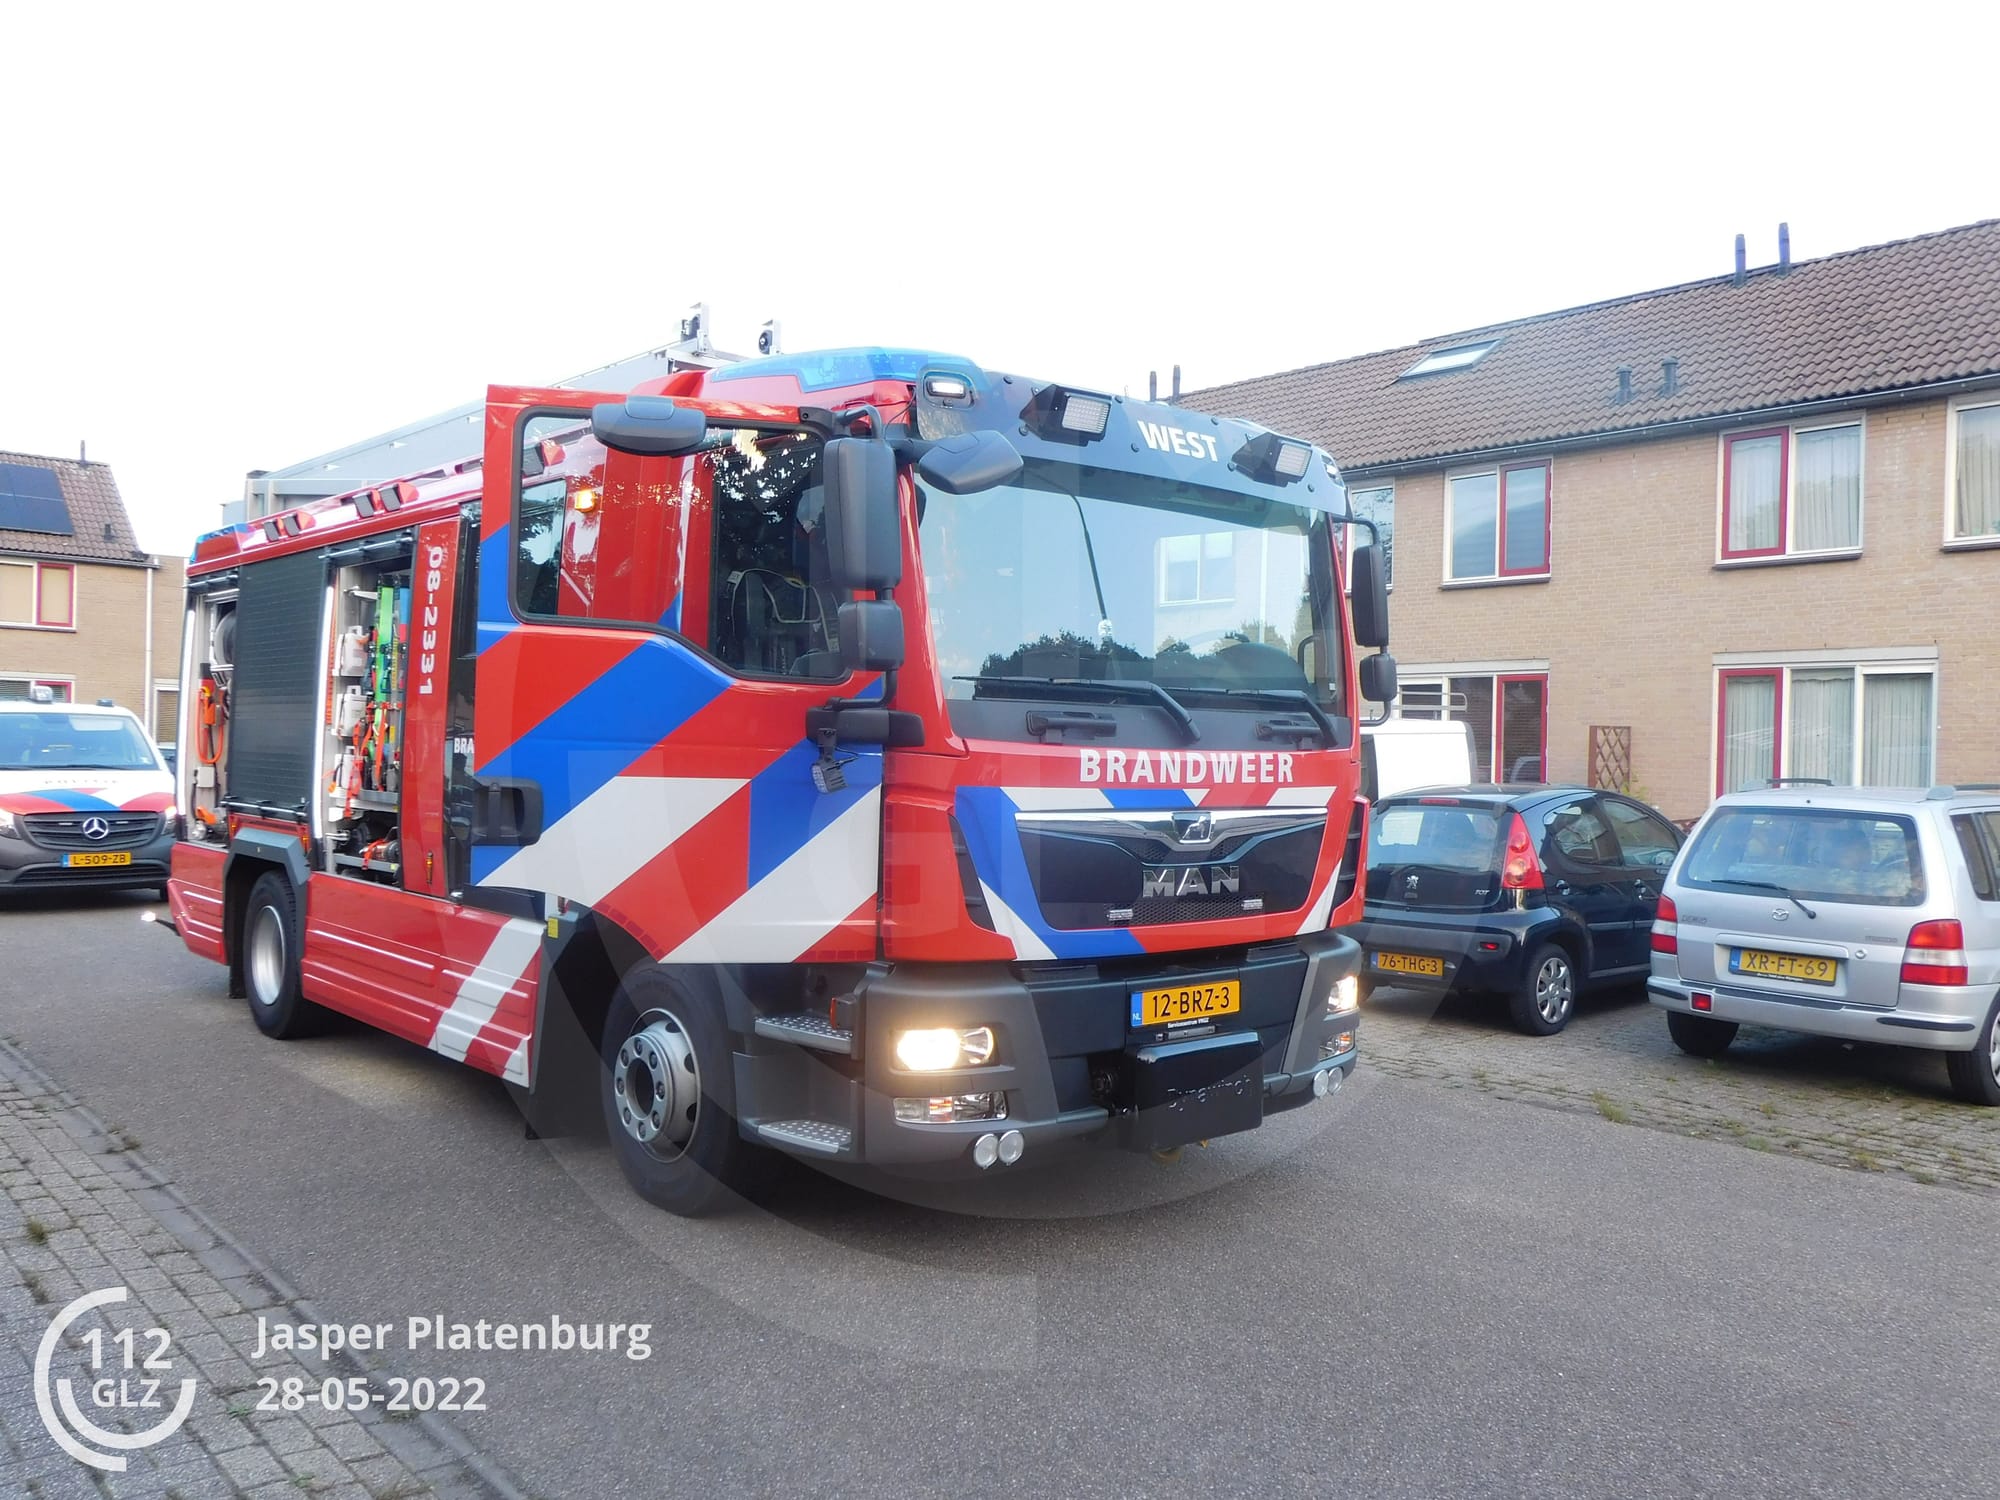 Auto versus huis in Nijmegen - huis wint